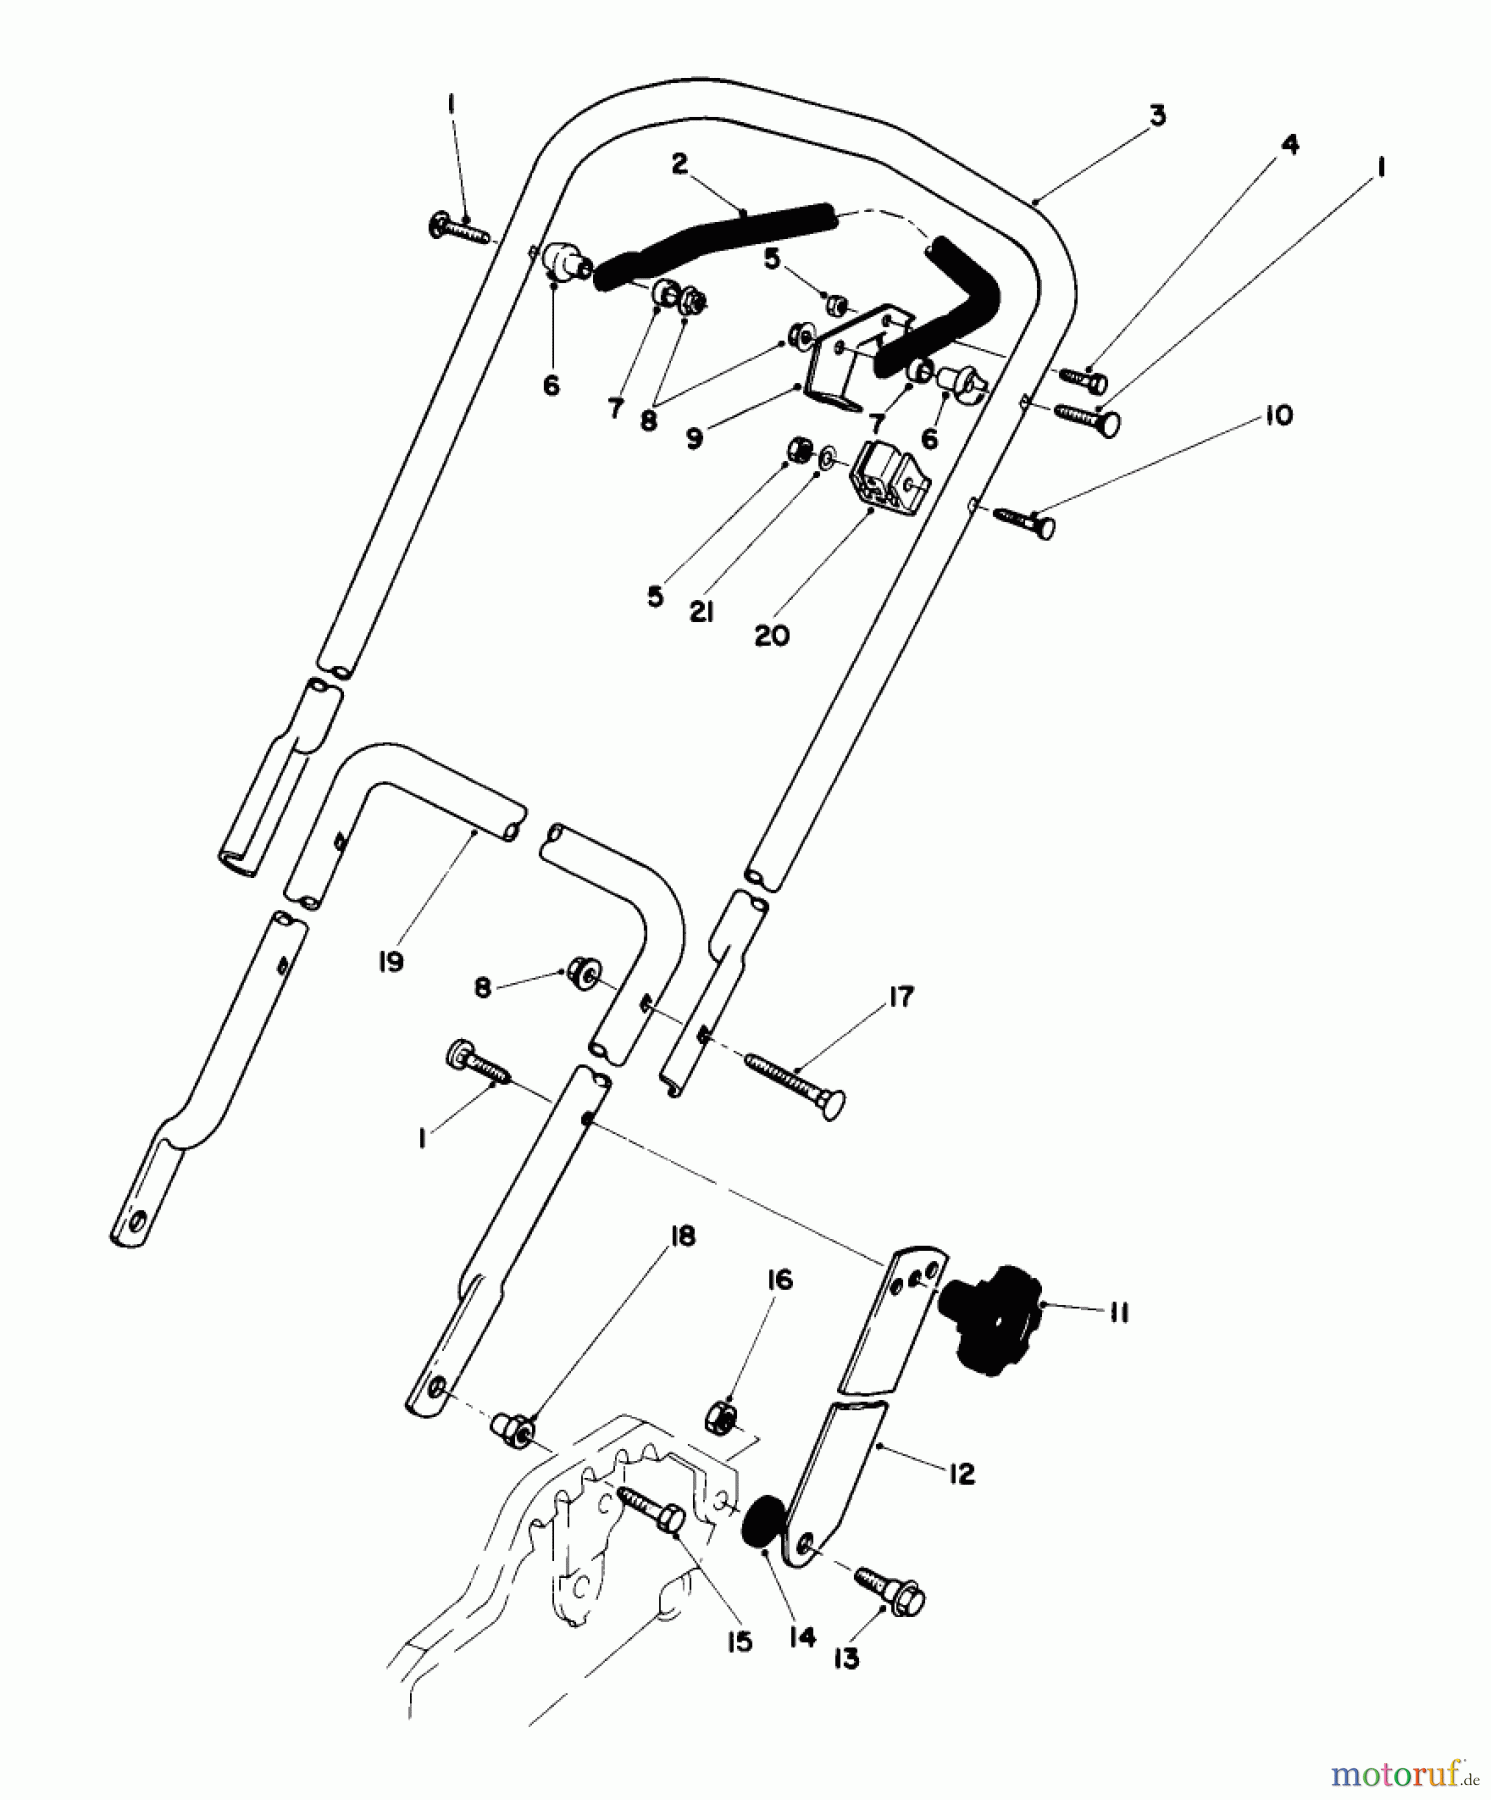  Toro Neu Mowers, Walk-Behind Seite 1 20574 - Toro Lawnmower, 1987 (7000001-7999999) HANDLE ASSEMBLY